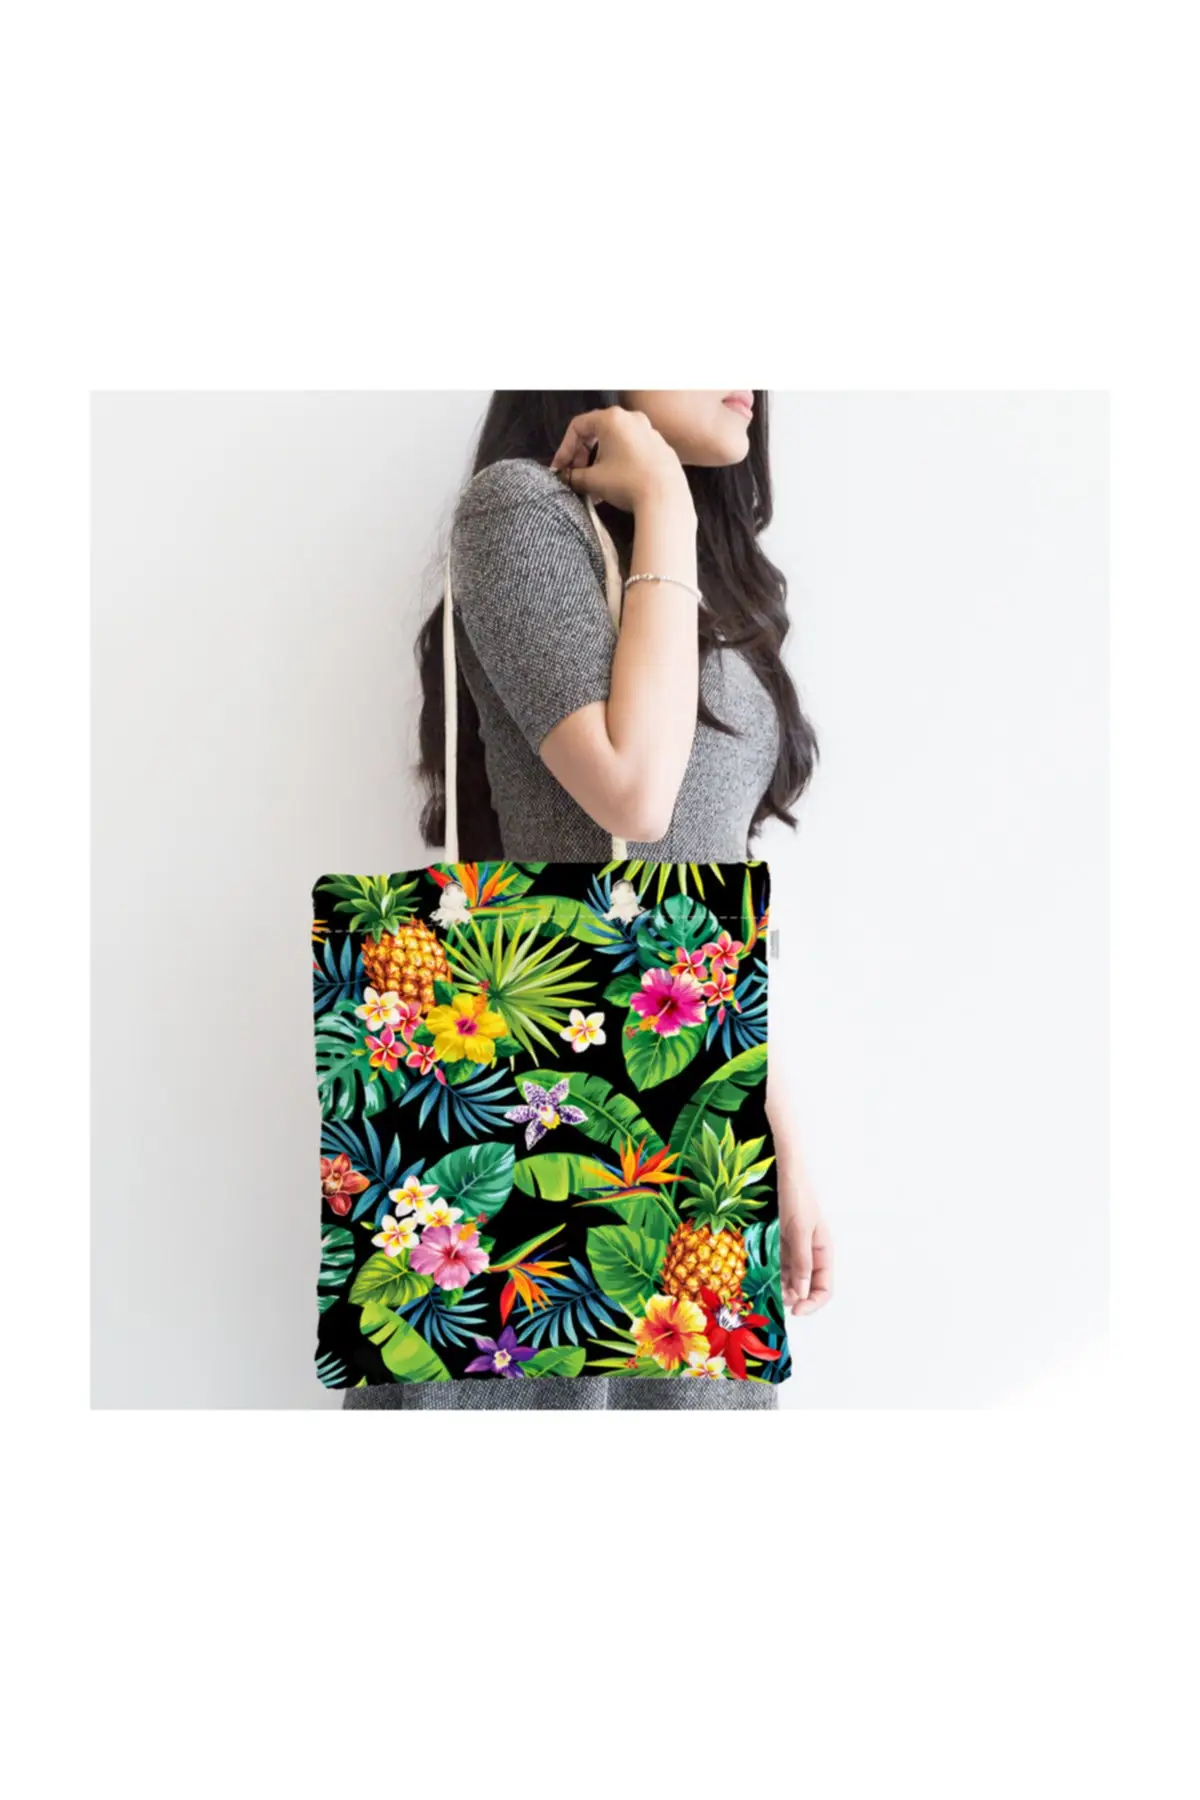 

Женская пляжная сумка на черном фоне с геометрическим рисунком листьев, тканевая сумка-тоут на молнии, модная летняя большая сумка для поку...